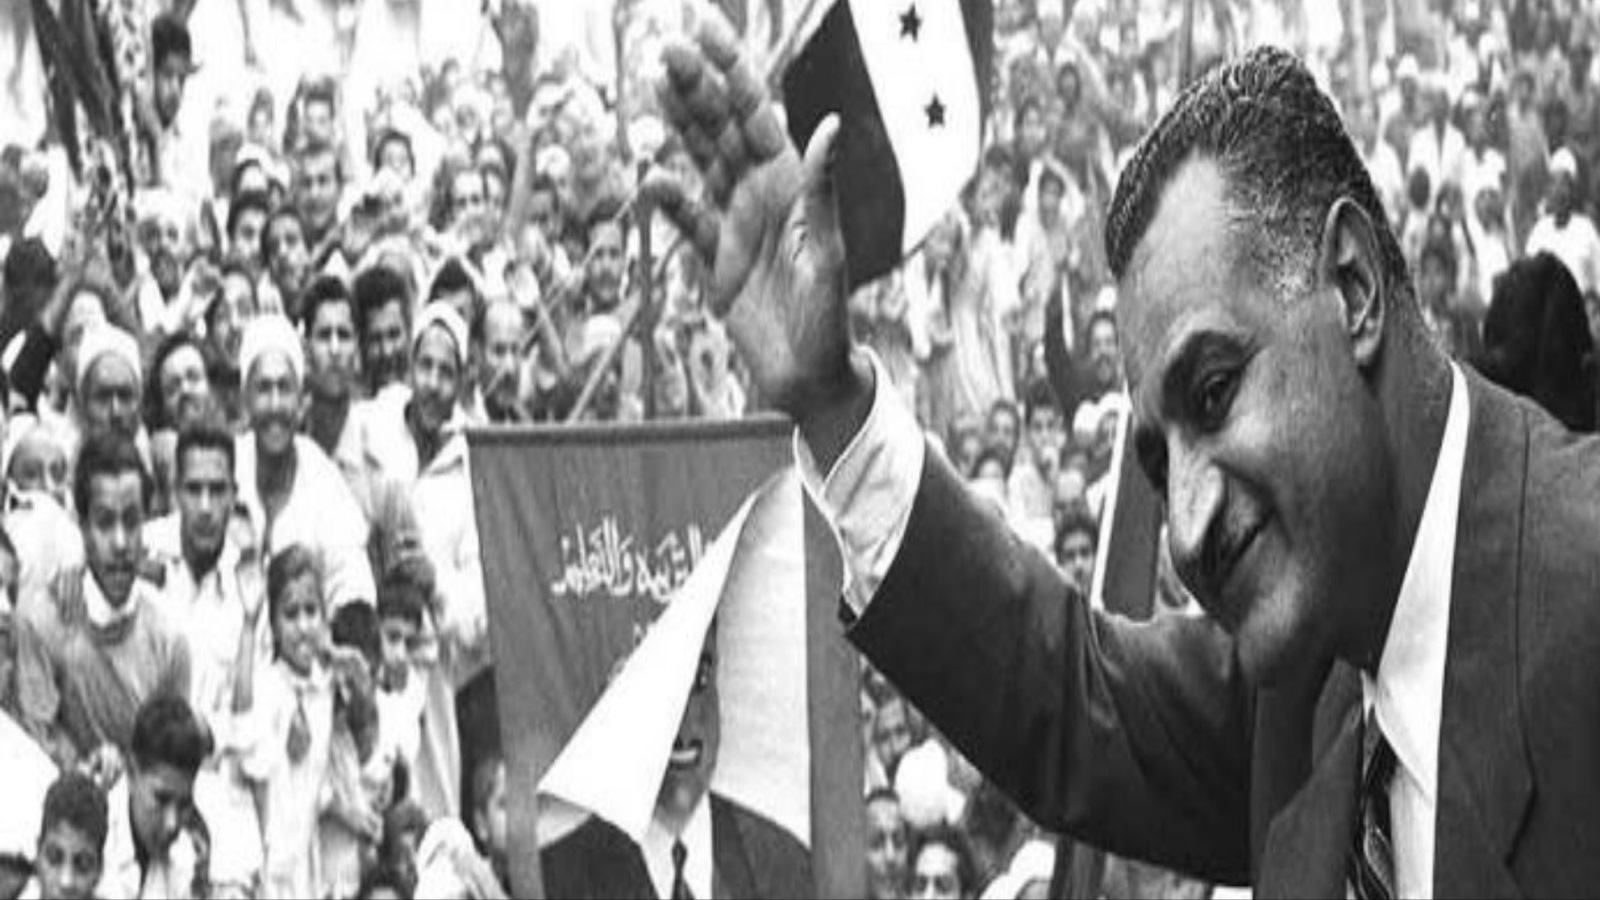 خصصت المخابرات المصرية في عهد جمال عبد الناصر فرقة مخابراتية مختصة في رصد النكت المنتشرة، بغية تحديد الاتجاهات التي يسلكها تفكير الجماهير.